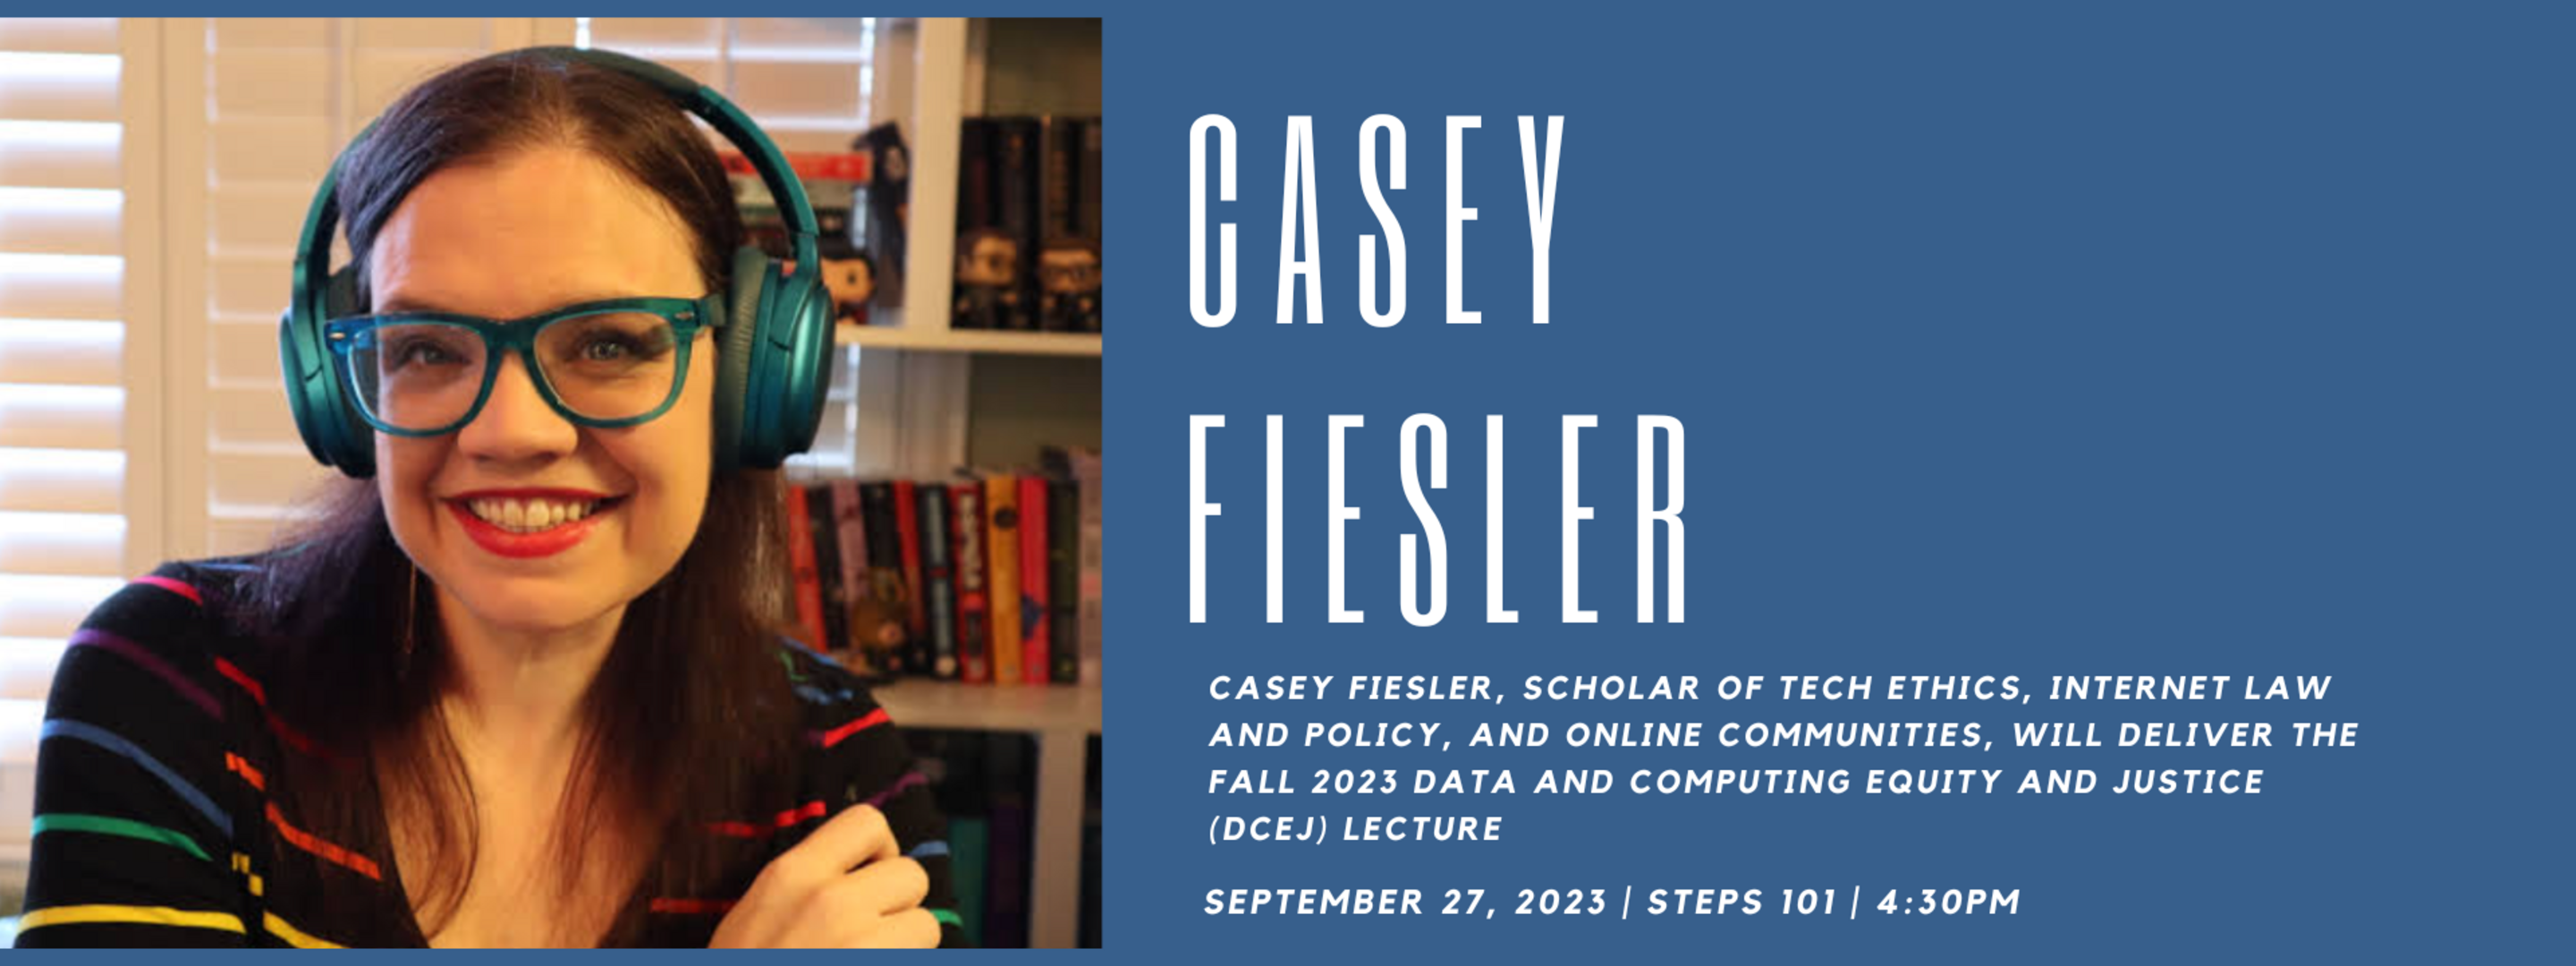 Casey Fiesler